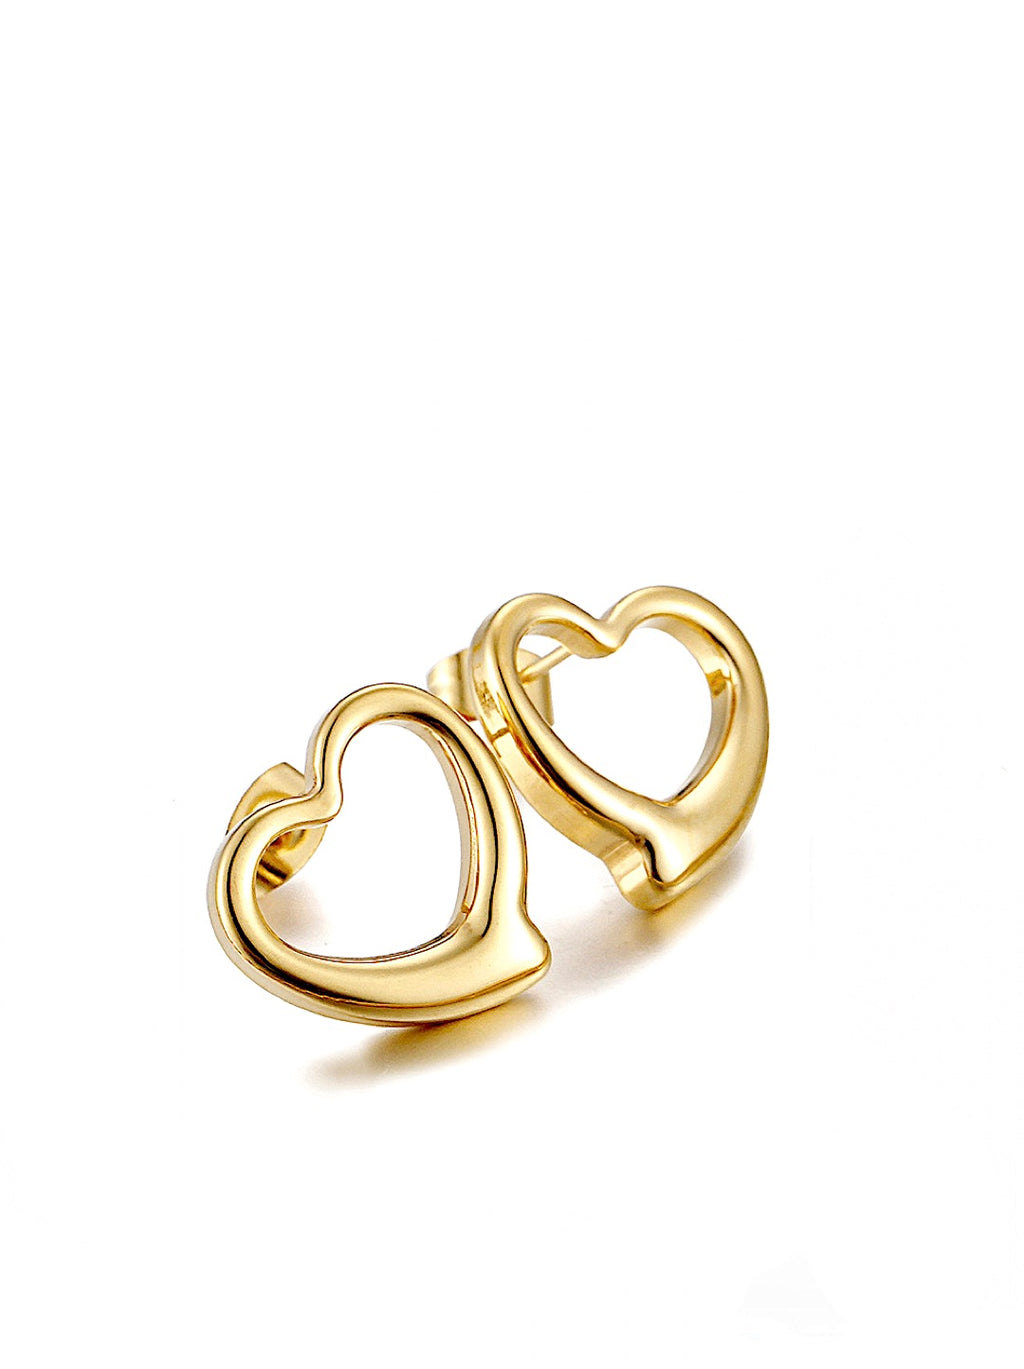 18K Gold Open Heart Iconic Stud Earrings